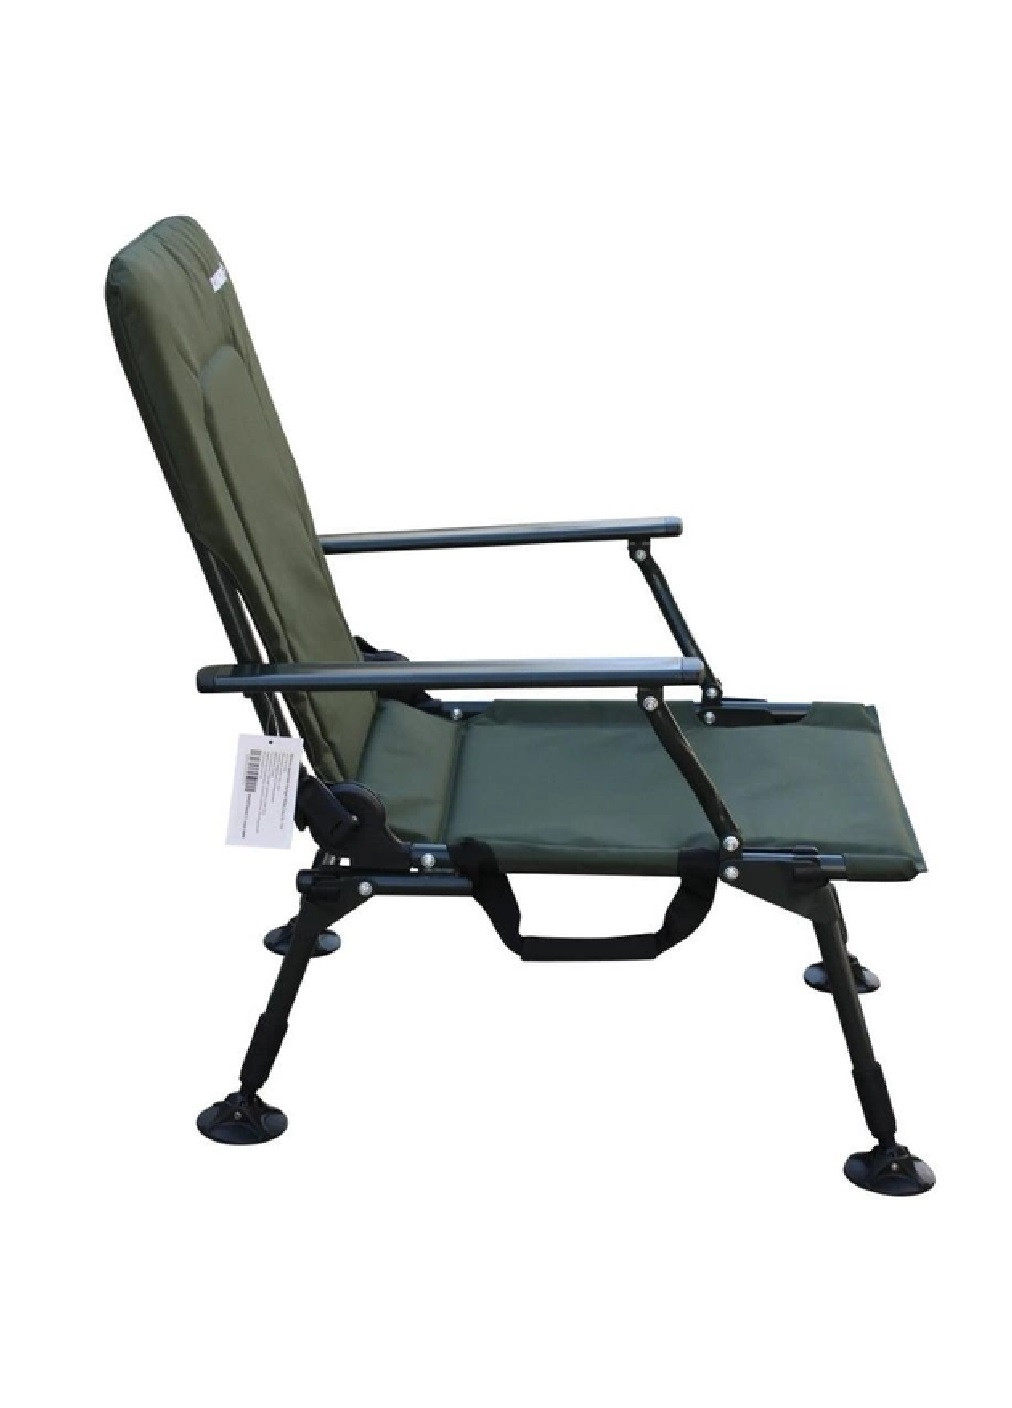 Раскладное карповое кресло с подлокотниками для отдыха пикника кемпинга рыбалки 87-96х48х45 см (475293-Prob) Темно-зеленое Unbranded (265391199)